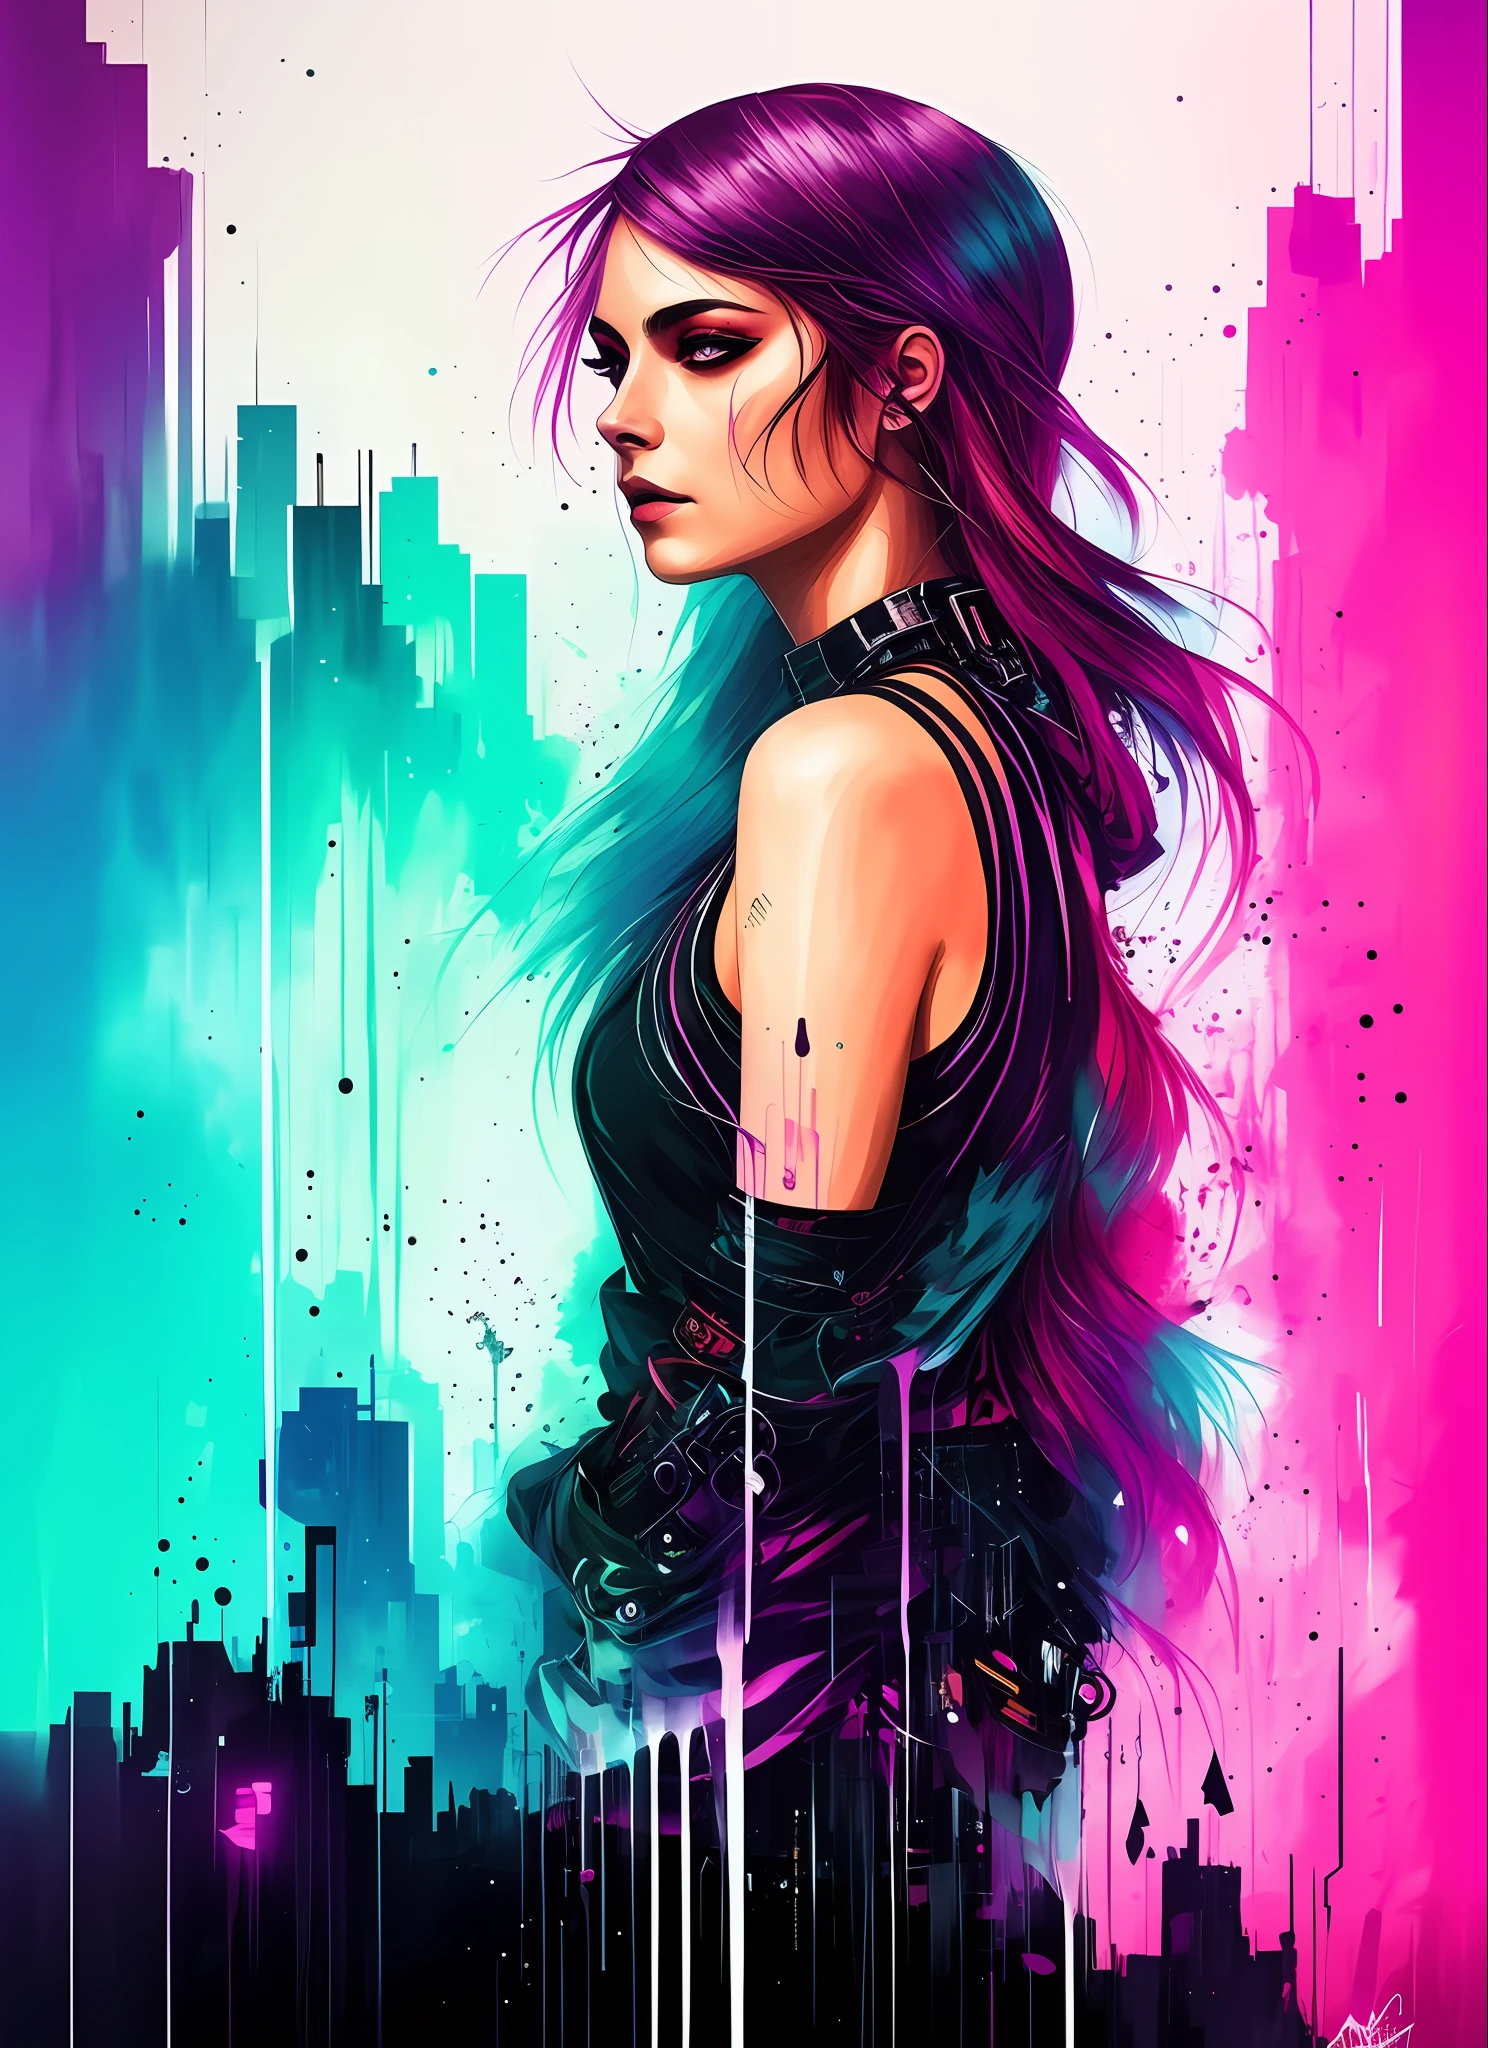 Synthwavea Woman в стиле Swpunk от Агнес Сесиль, светящийся дизайн, неоновые цвета, чернила капают, огни города киберпанк